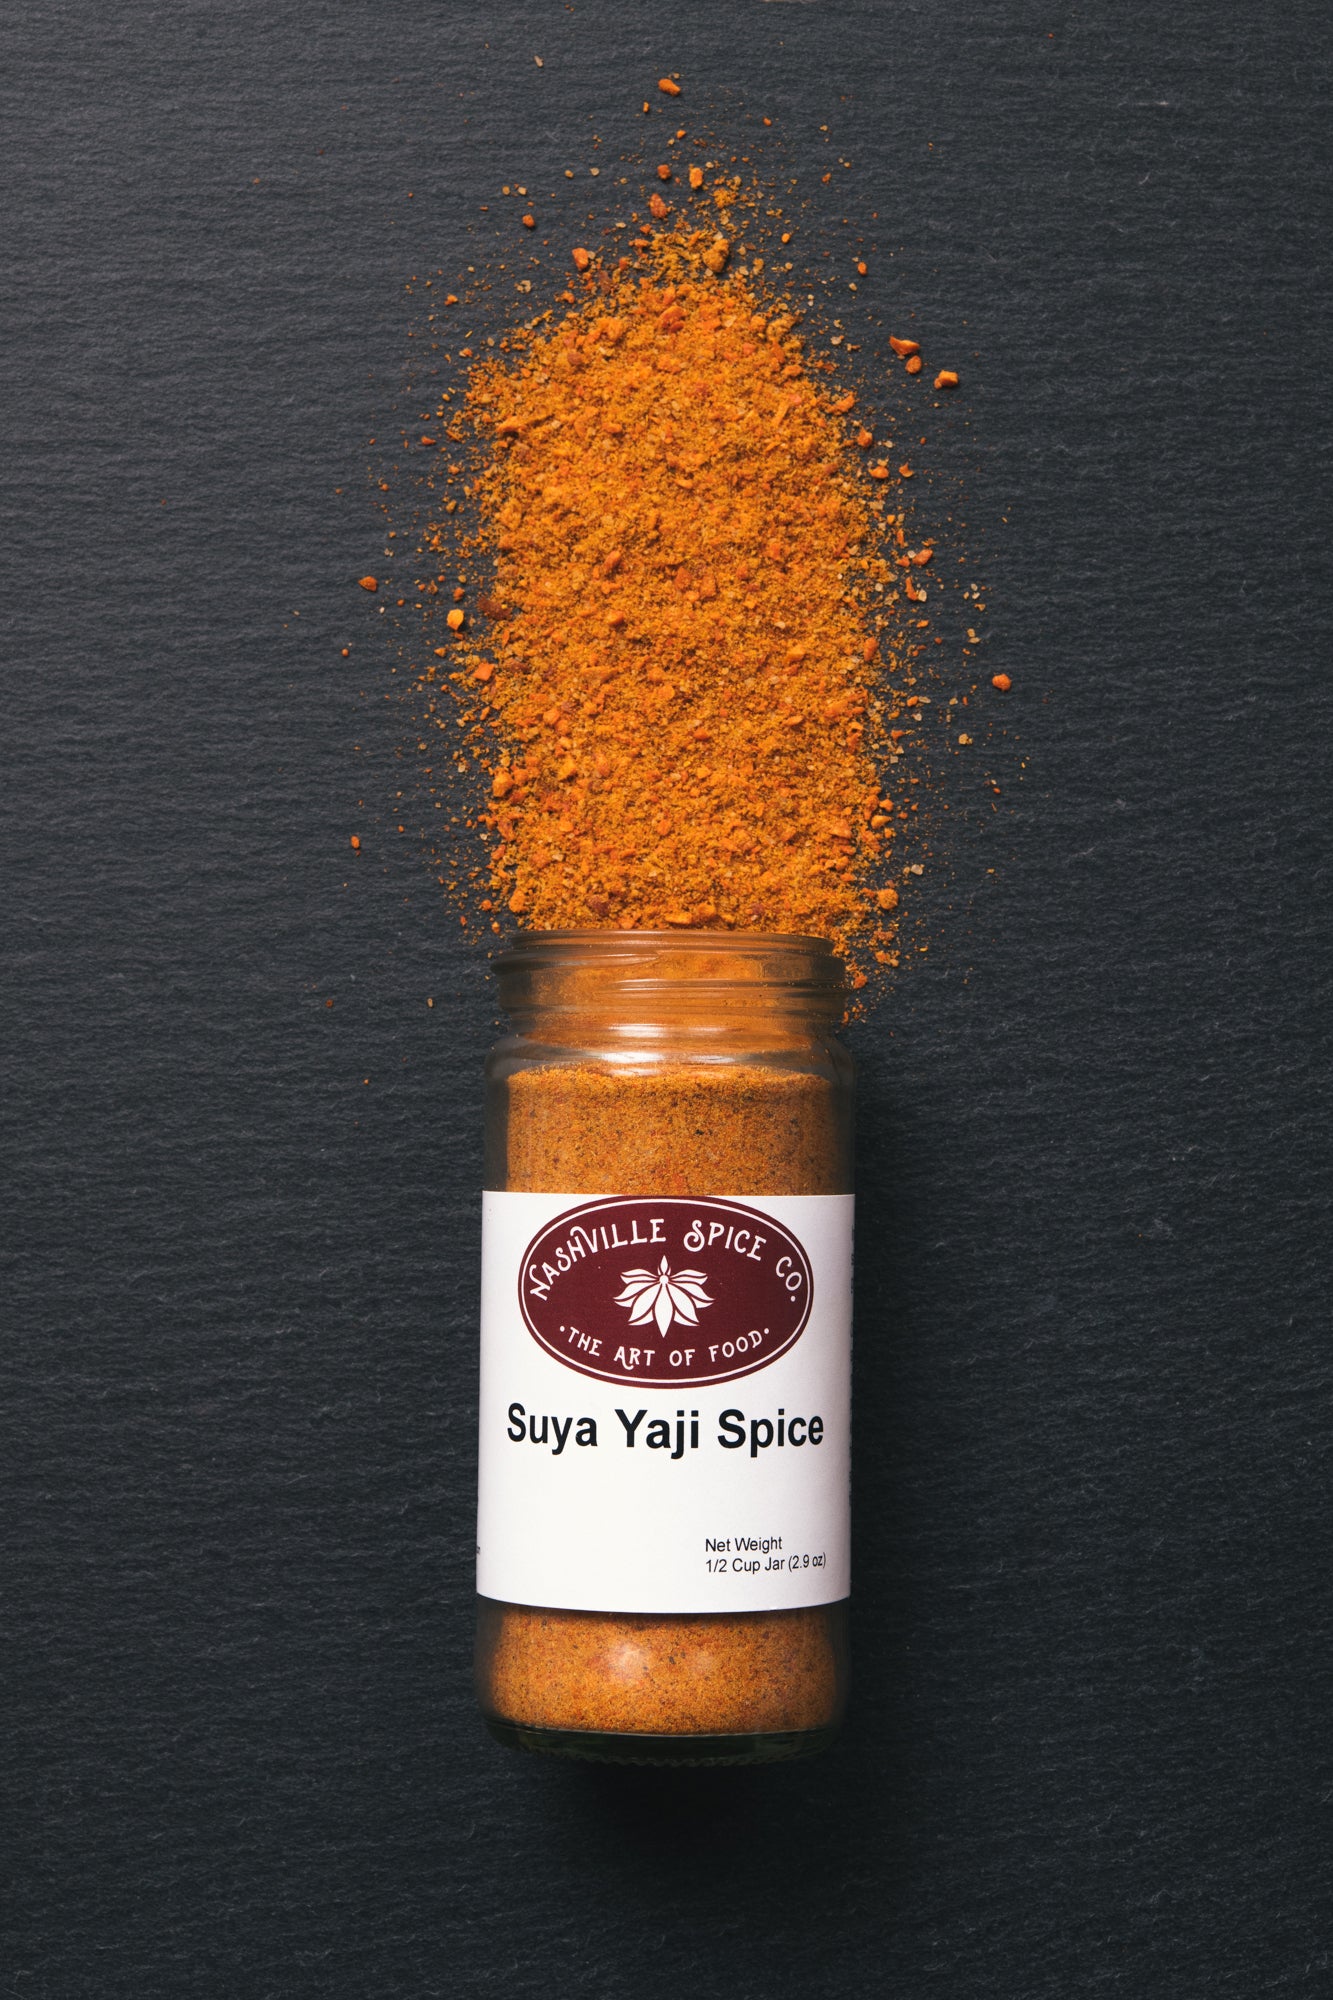 Suya Yaji Spice